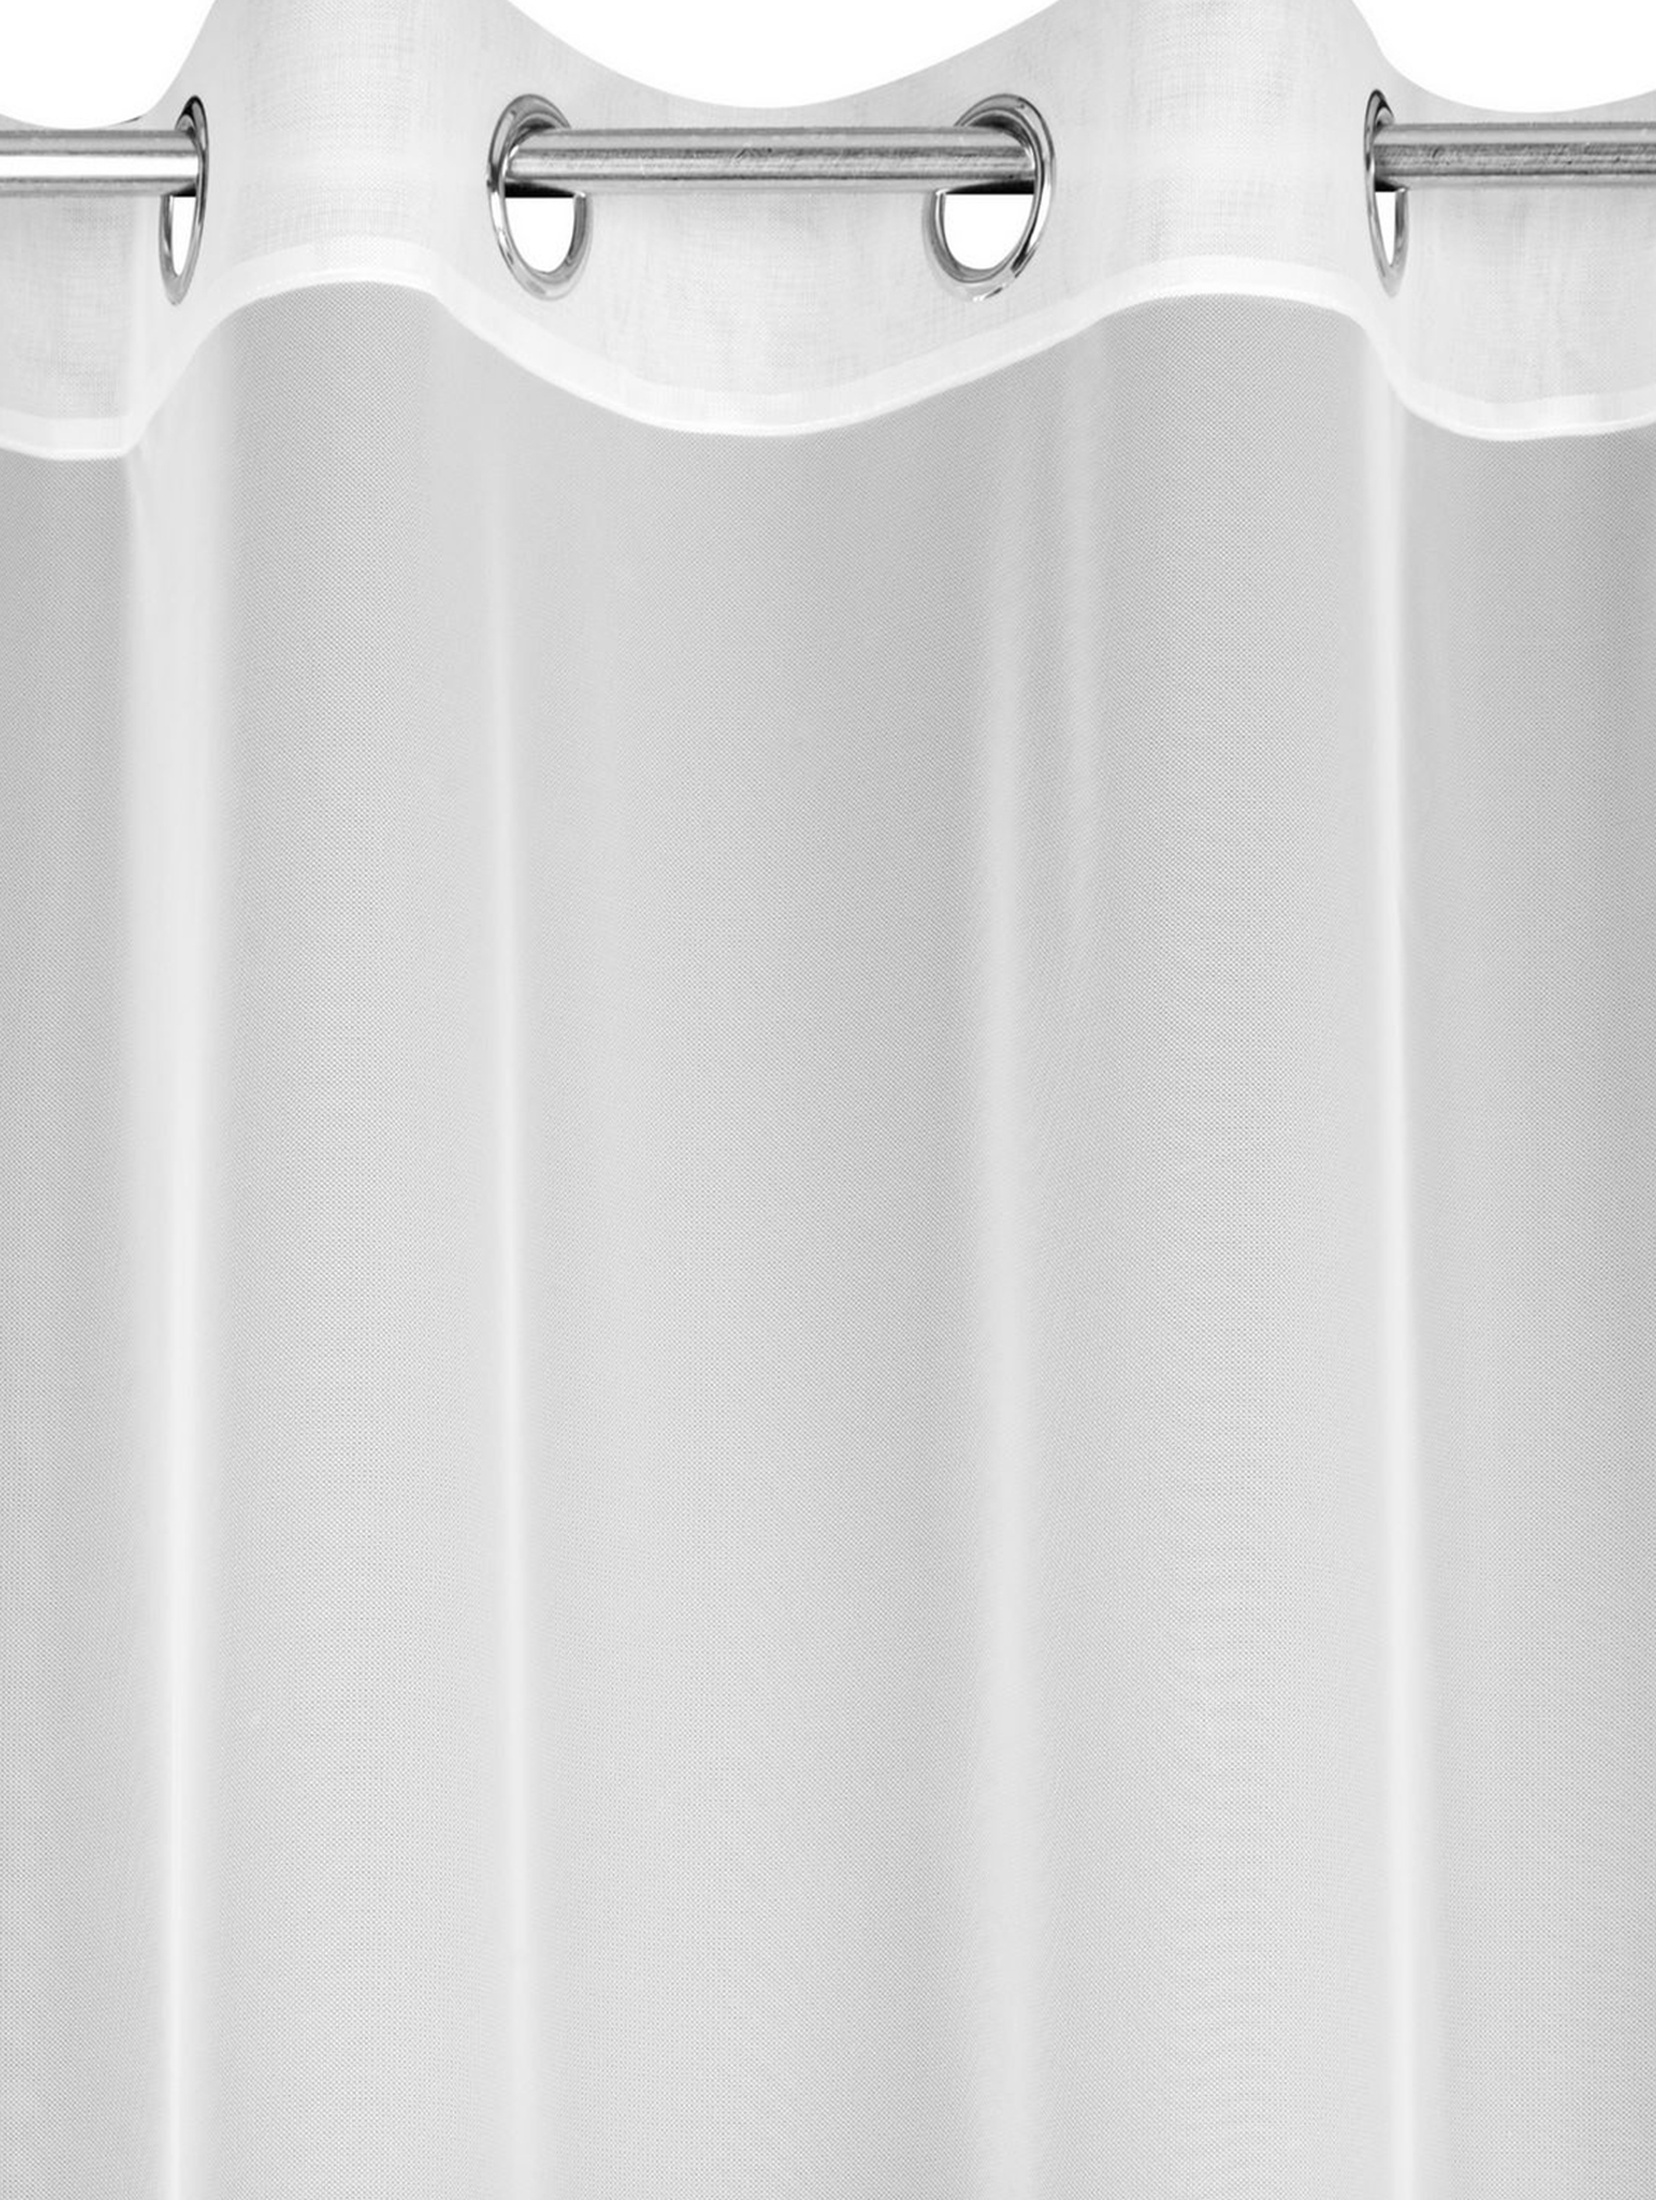 Firana gotowa Sofi 140 x 260 cm biały